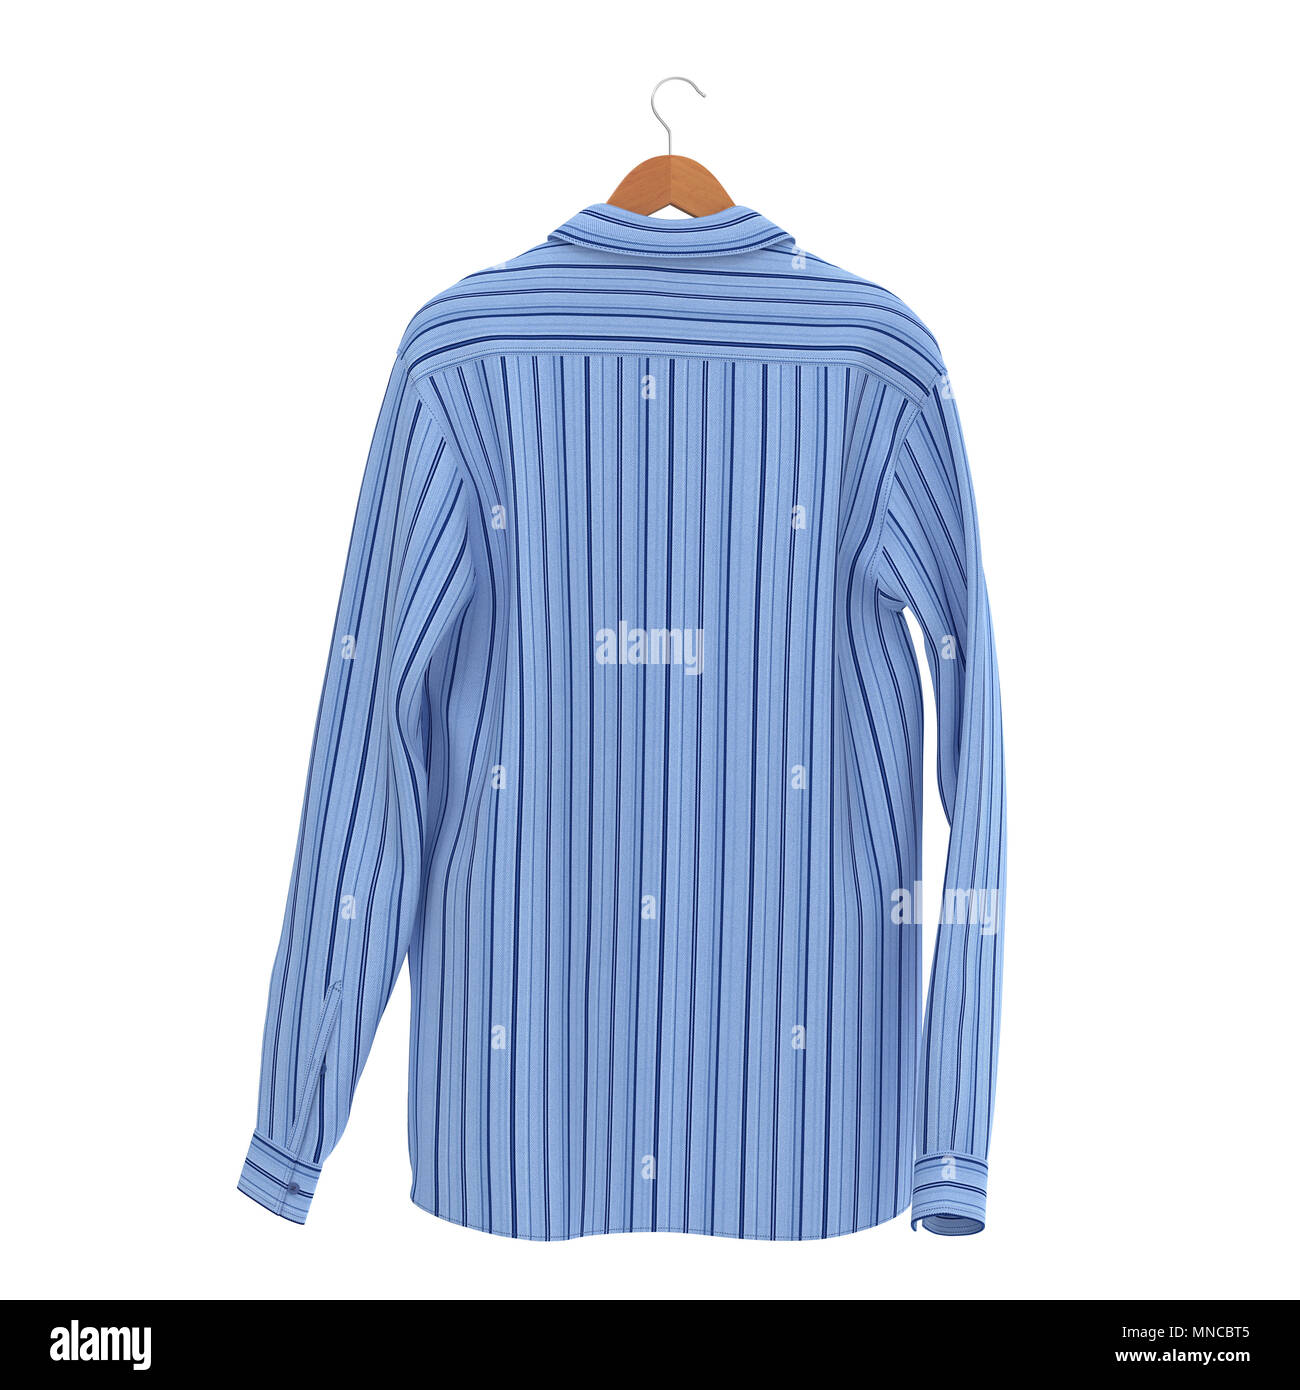 Blue Stripped Shirt On Hanger on white background. 3D illustration Stock Photo